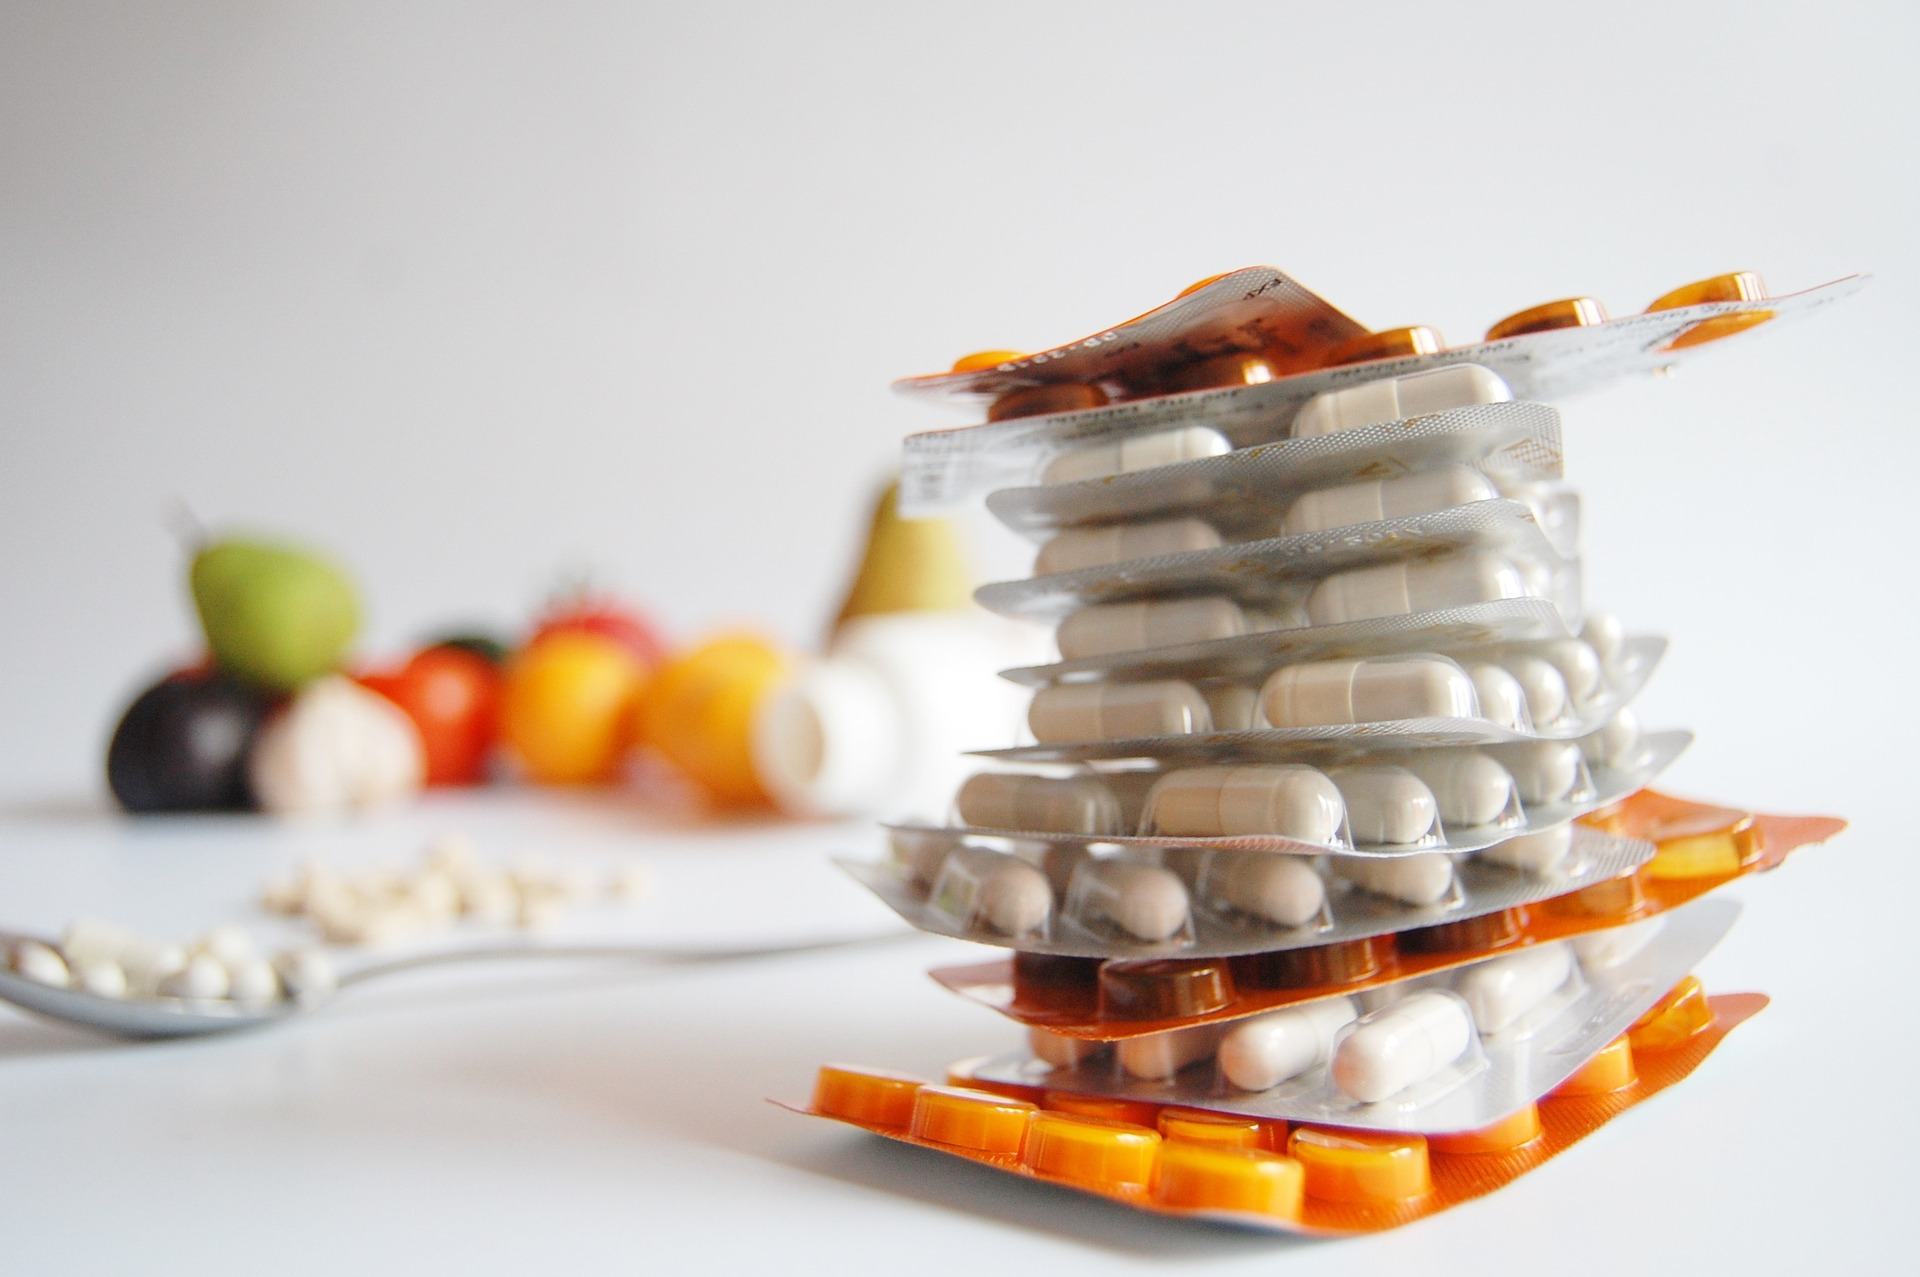 Φάρμακα: Η λίστα του ΕΟΦ με τα σκευάσματα σε έλλειψη – Οι εναλλακτικές επιλογές